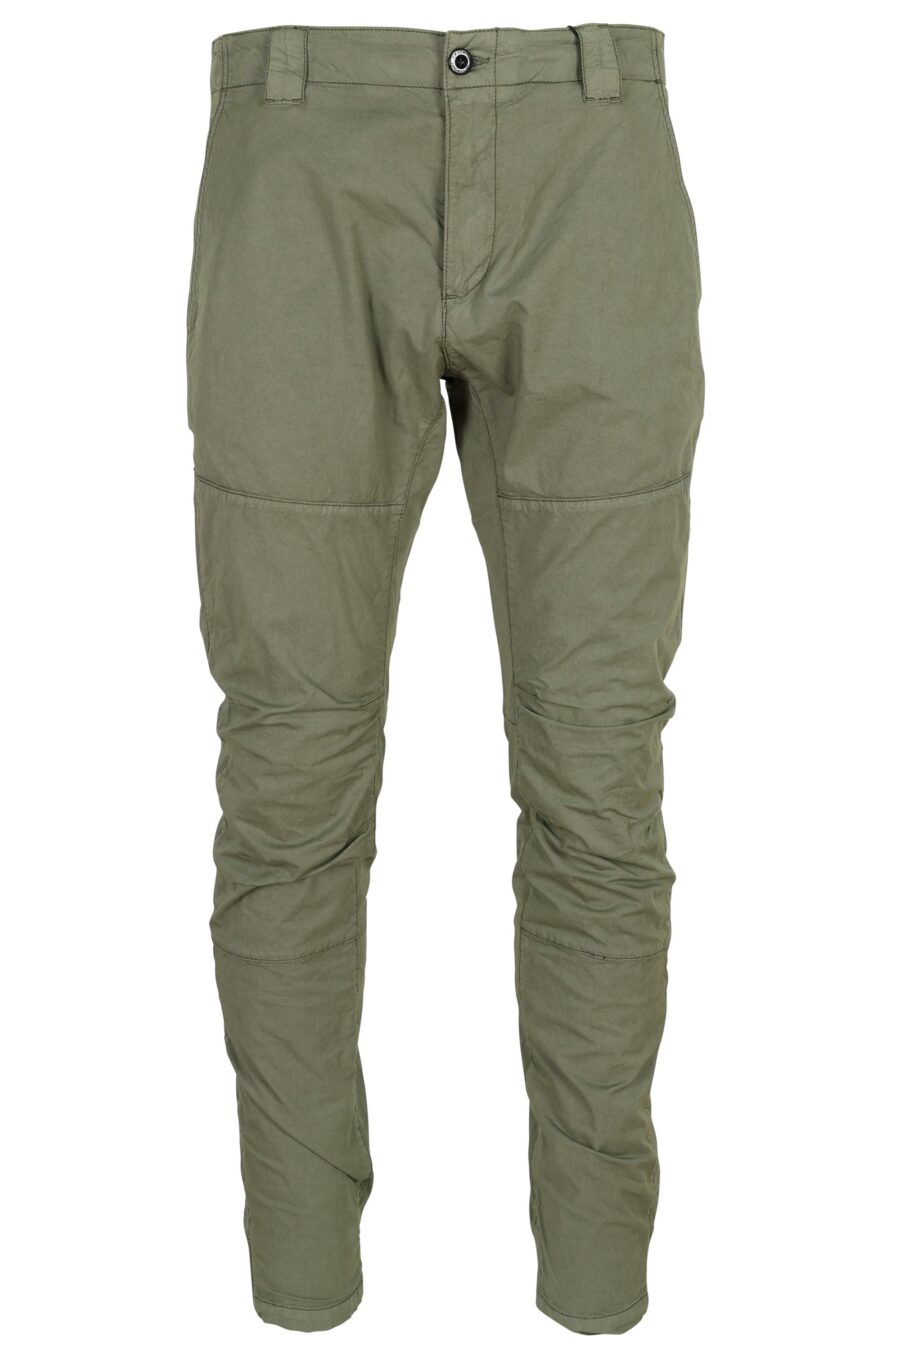 Pantalon ergonomique gris-vert avec mini-logo - 7620943806939